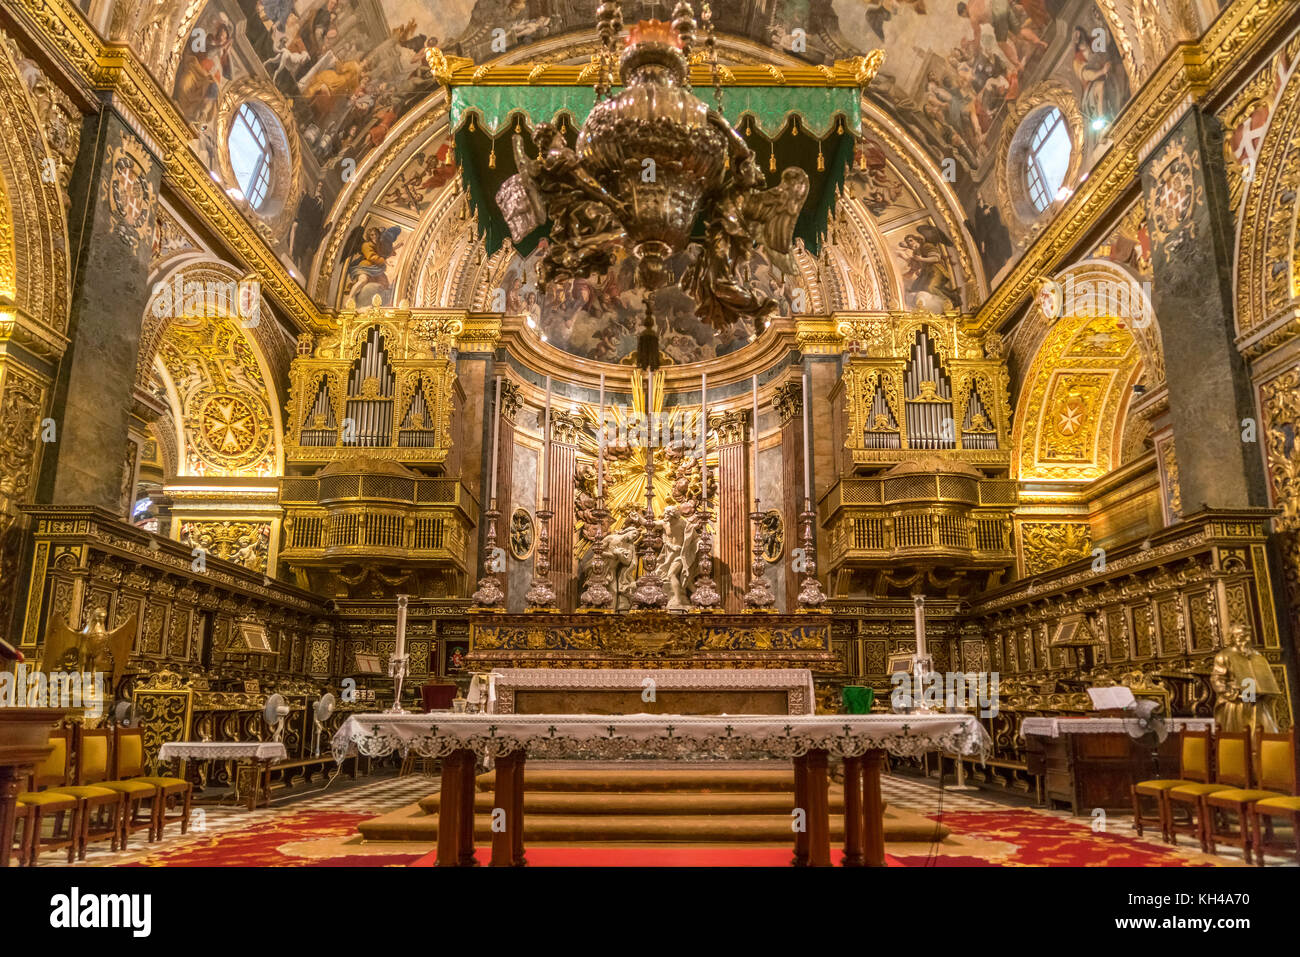 Innenraum und Altar der römisch-katholischen St. John’s Co-Cathedral, Valletta, Malta | Roman Catholic Saint John's Co-Cathedral interior and Altar, V Stock Photo